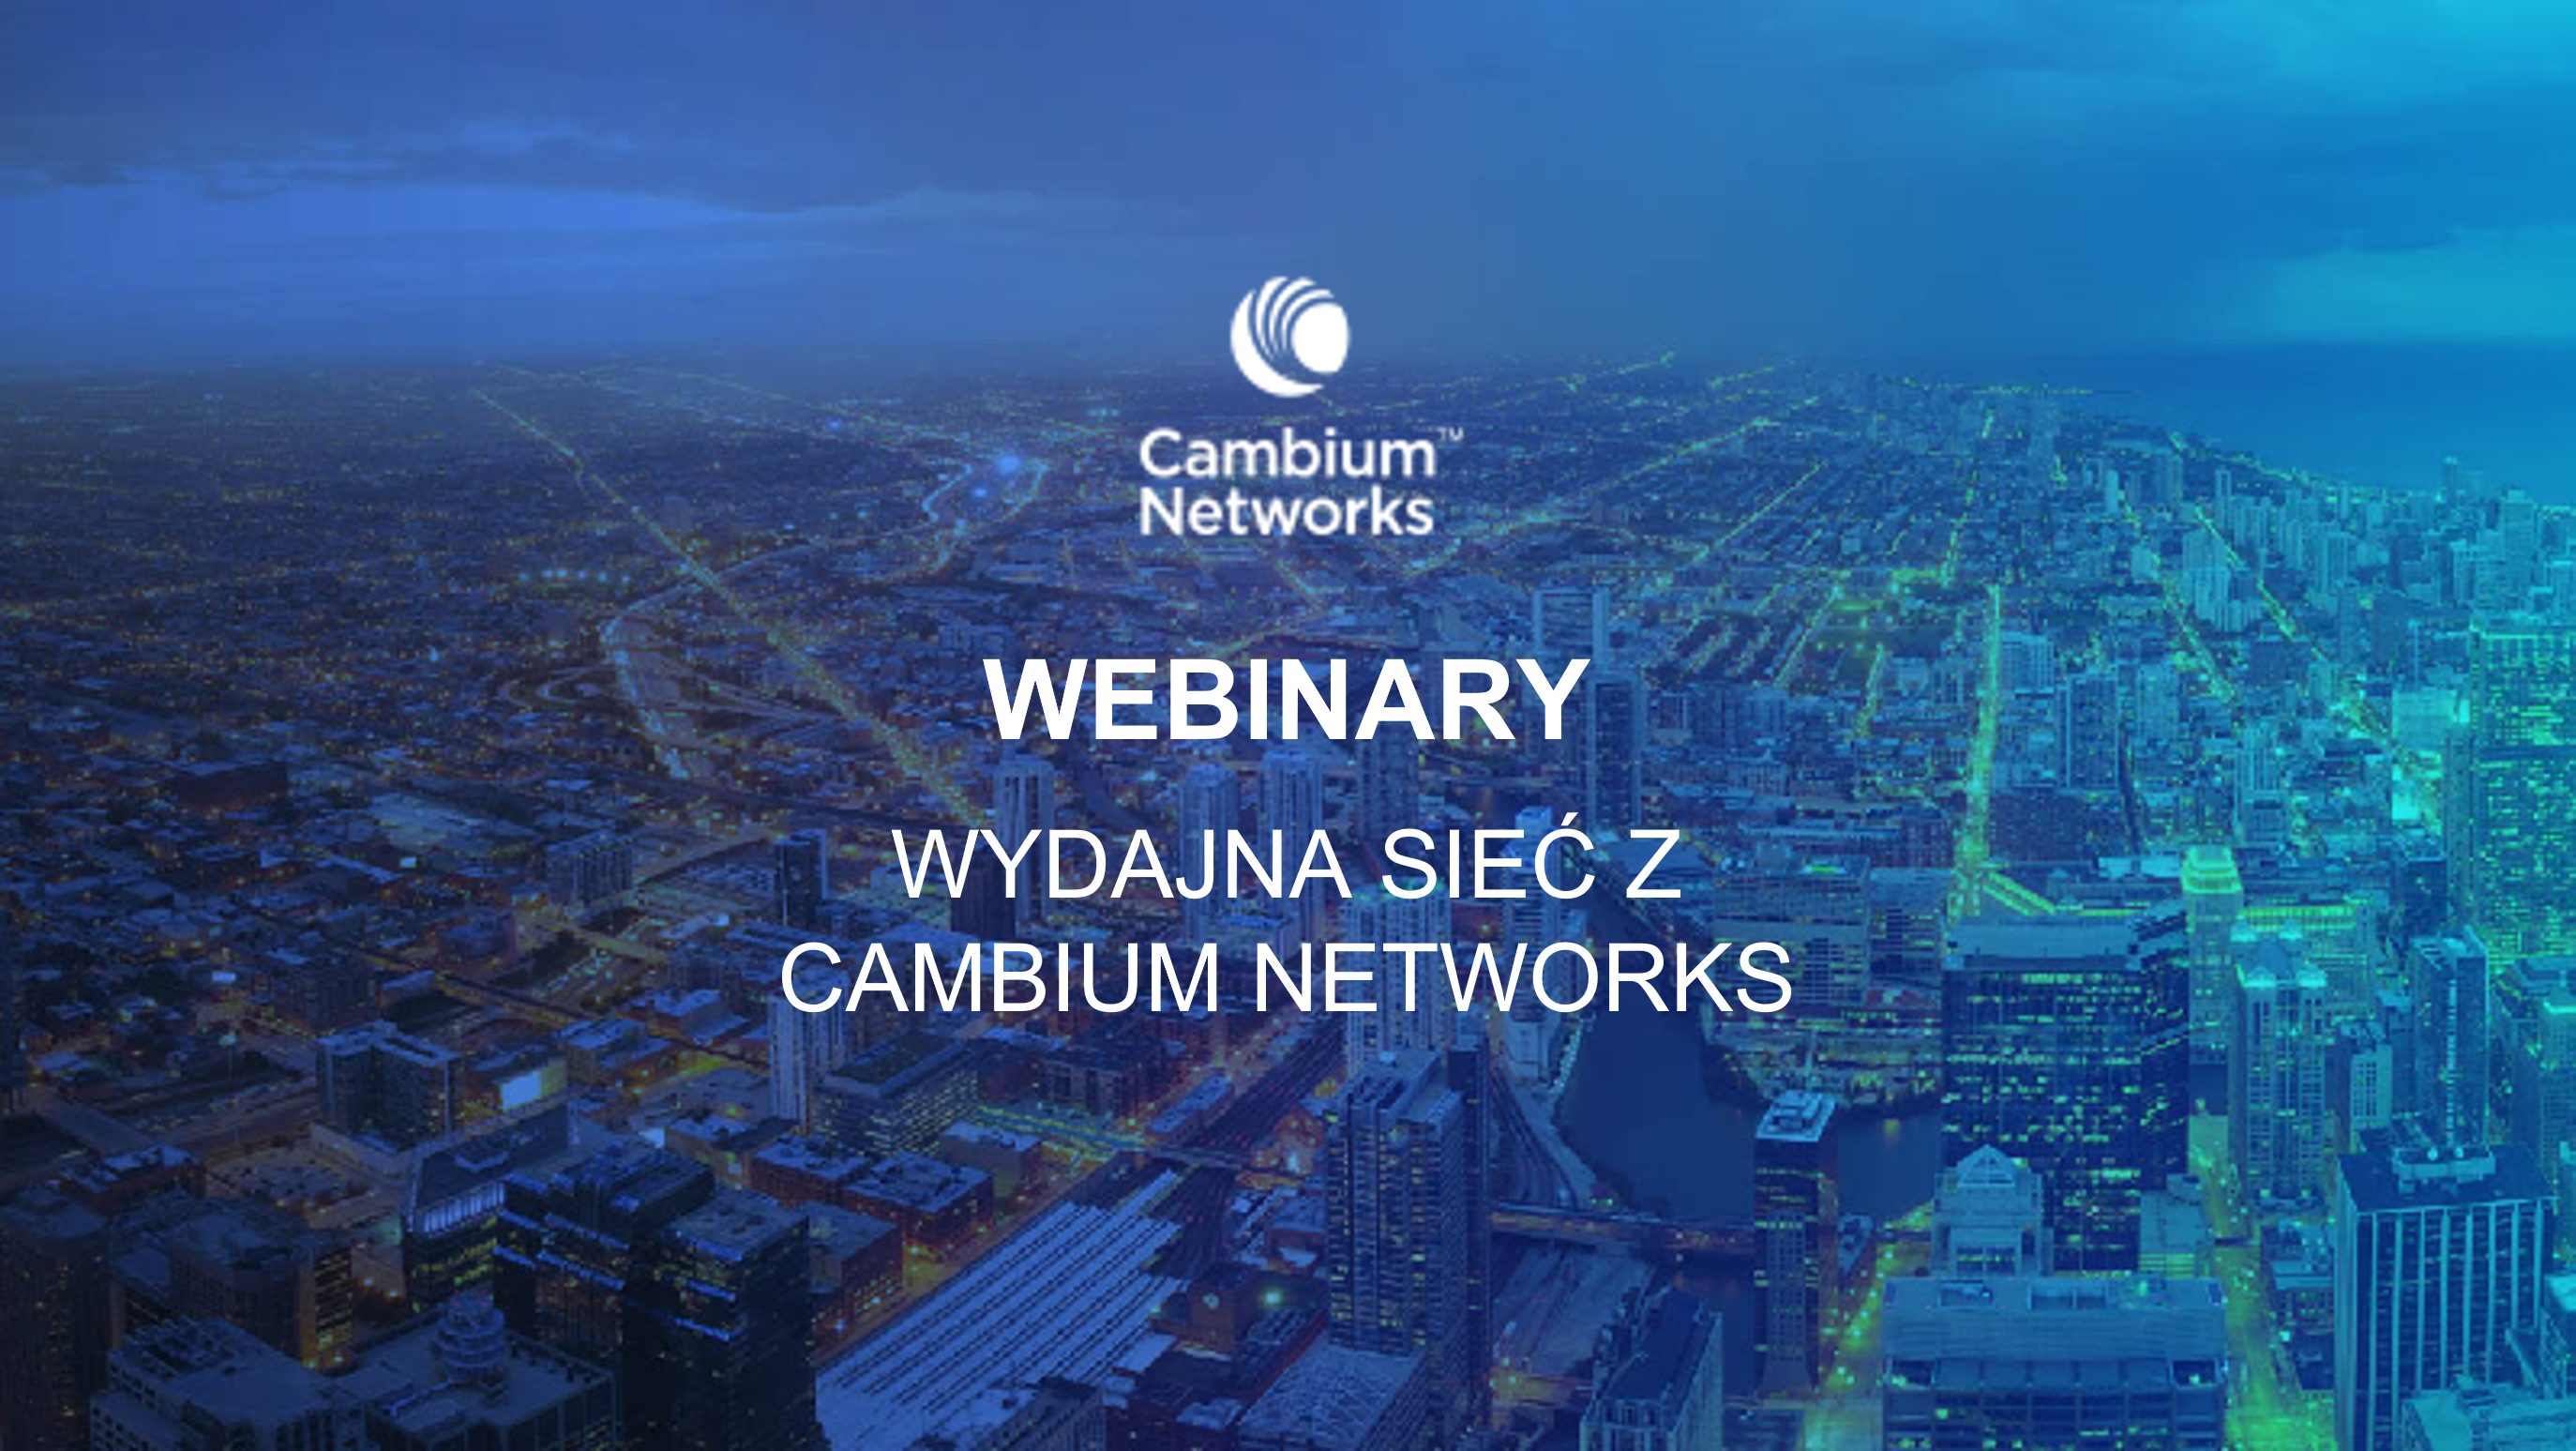 Wydajna sieć z Cambium Networks – rusza letnia edycja webinarów.